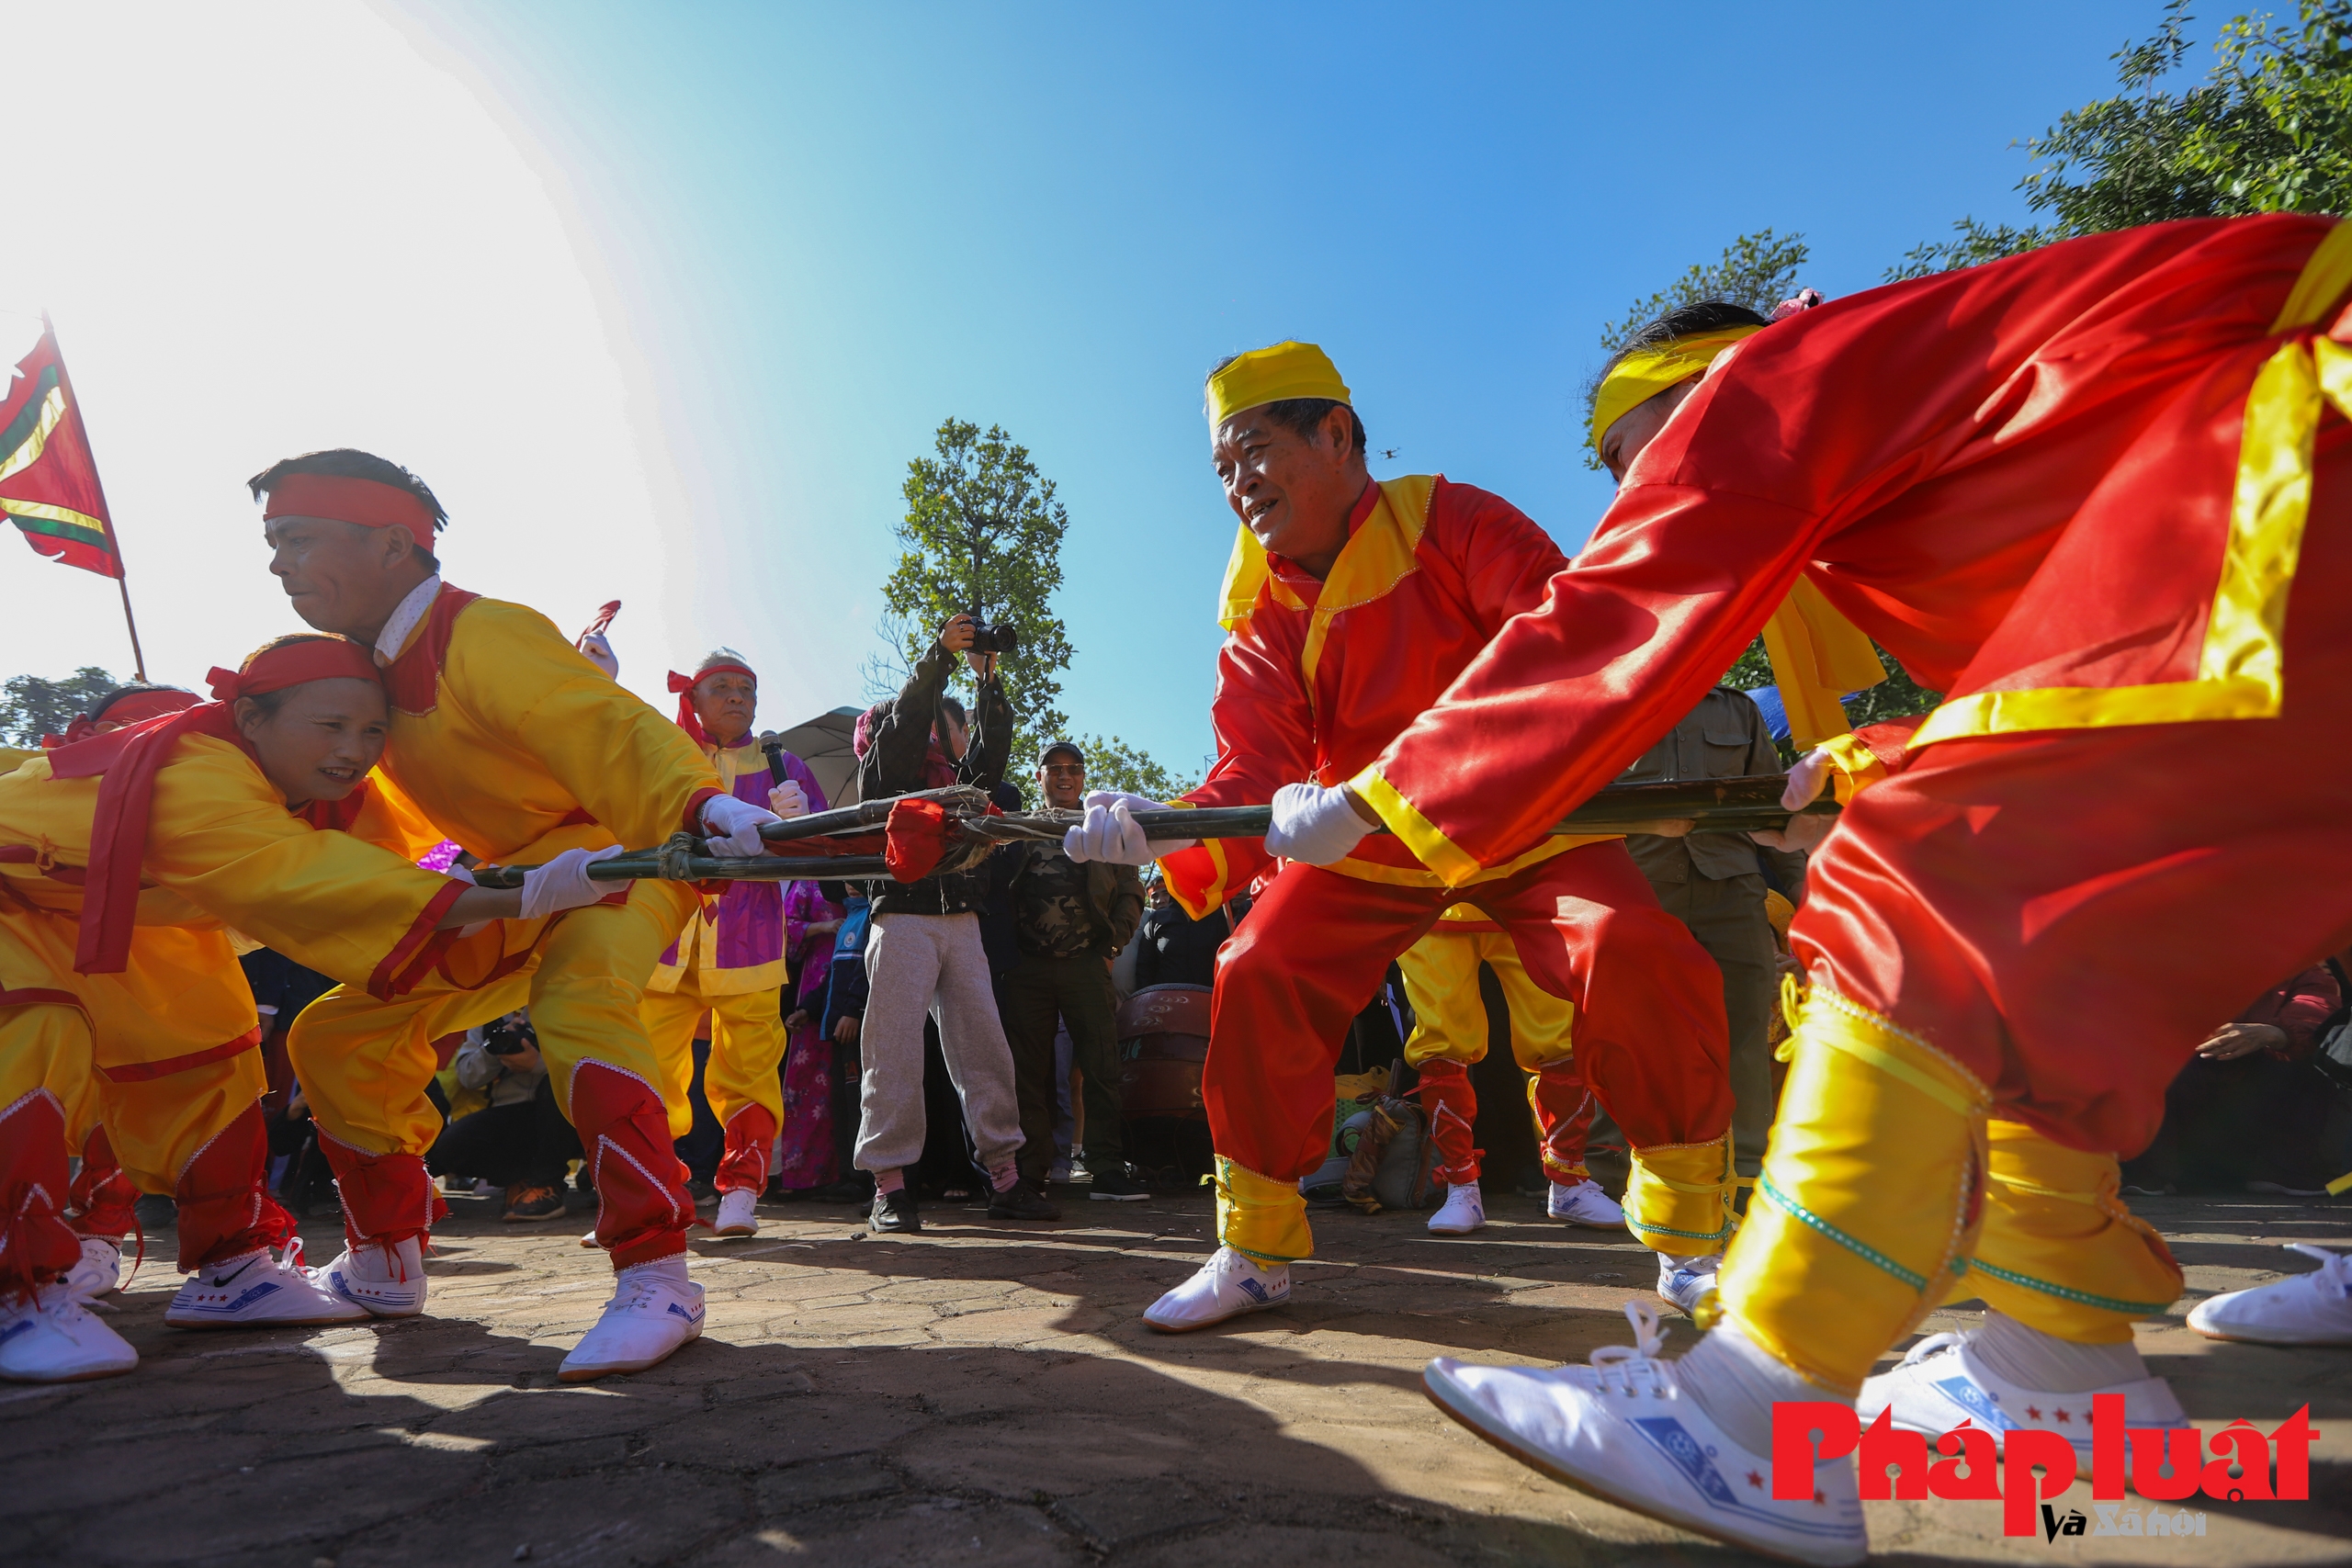 Lần đầu tiên tổ chức liên hoan trình diễn nghi lễ và trò chơi kéo co tại Việt Nam